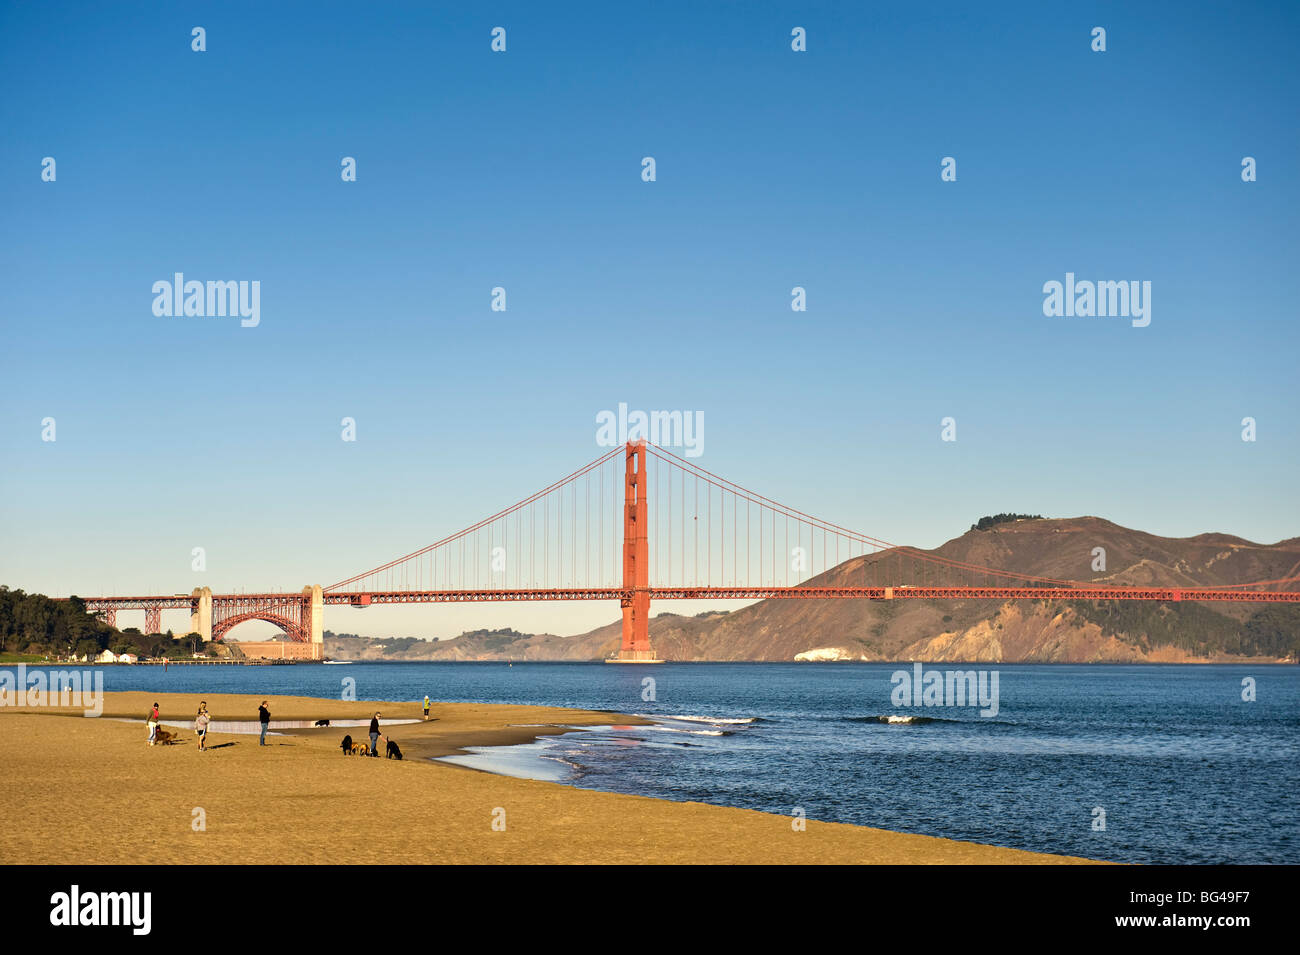 USA, California, San Francisco, Golden Gate Bridge and Presidio Beach Park Stock Photo